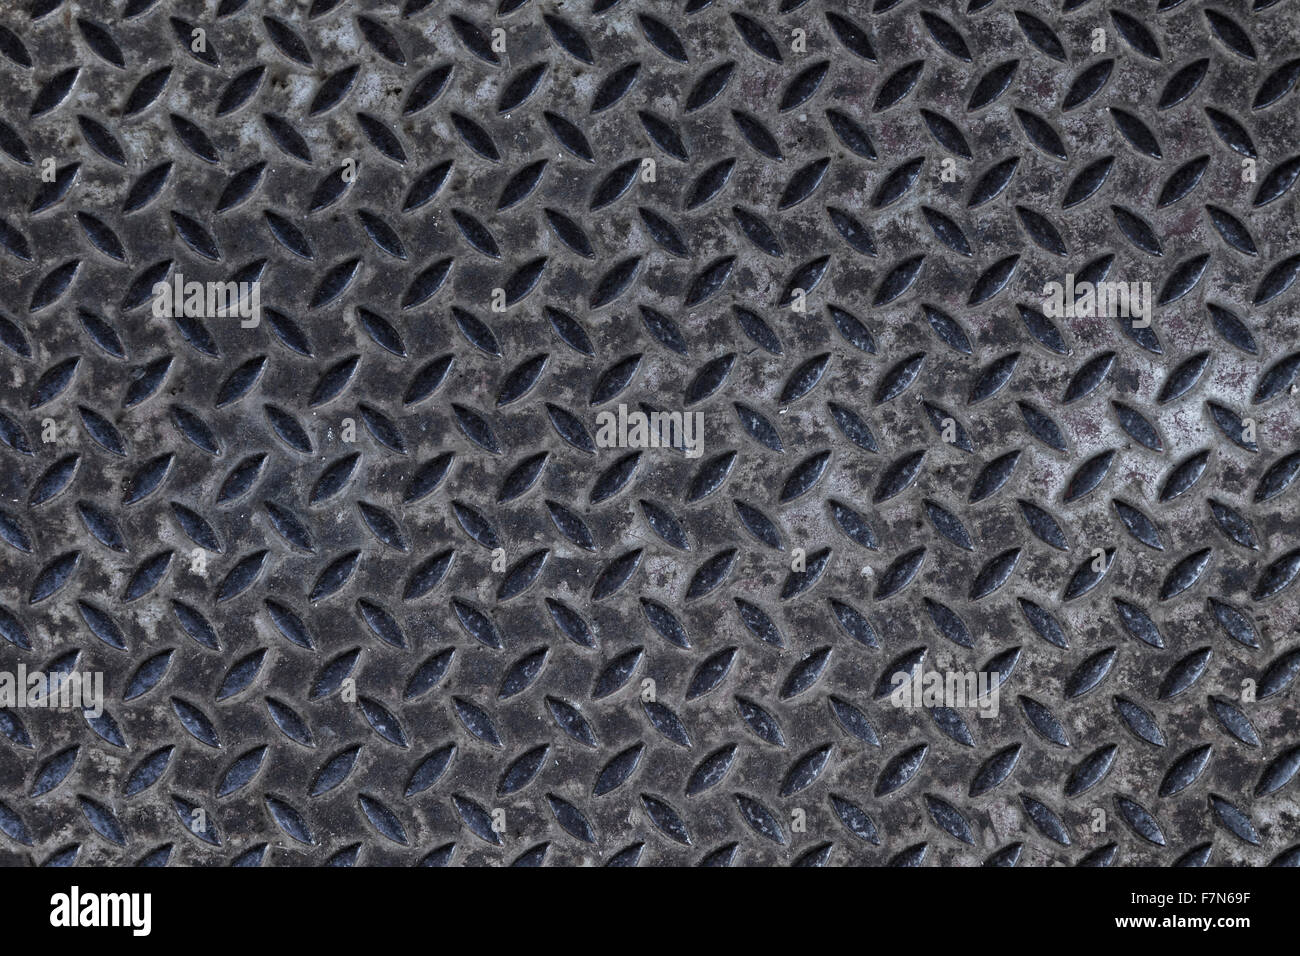 Grunge ruvide testurizzate acciaio vecchio disegno battistrada sullo sfondo Foto Stock